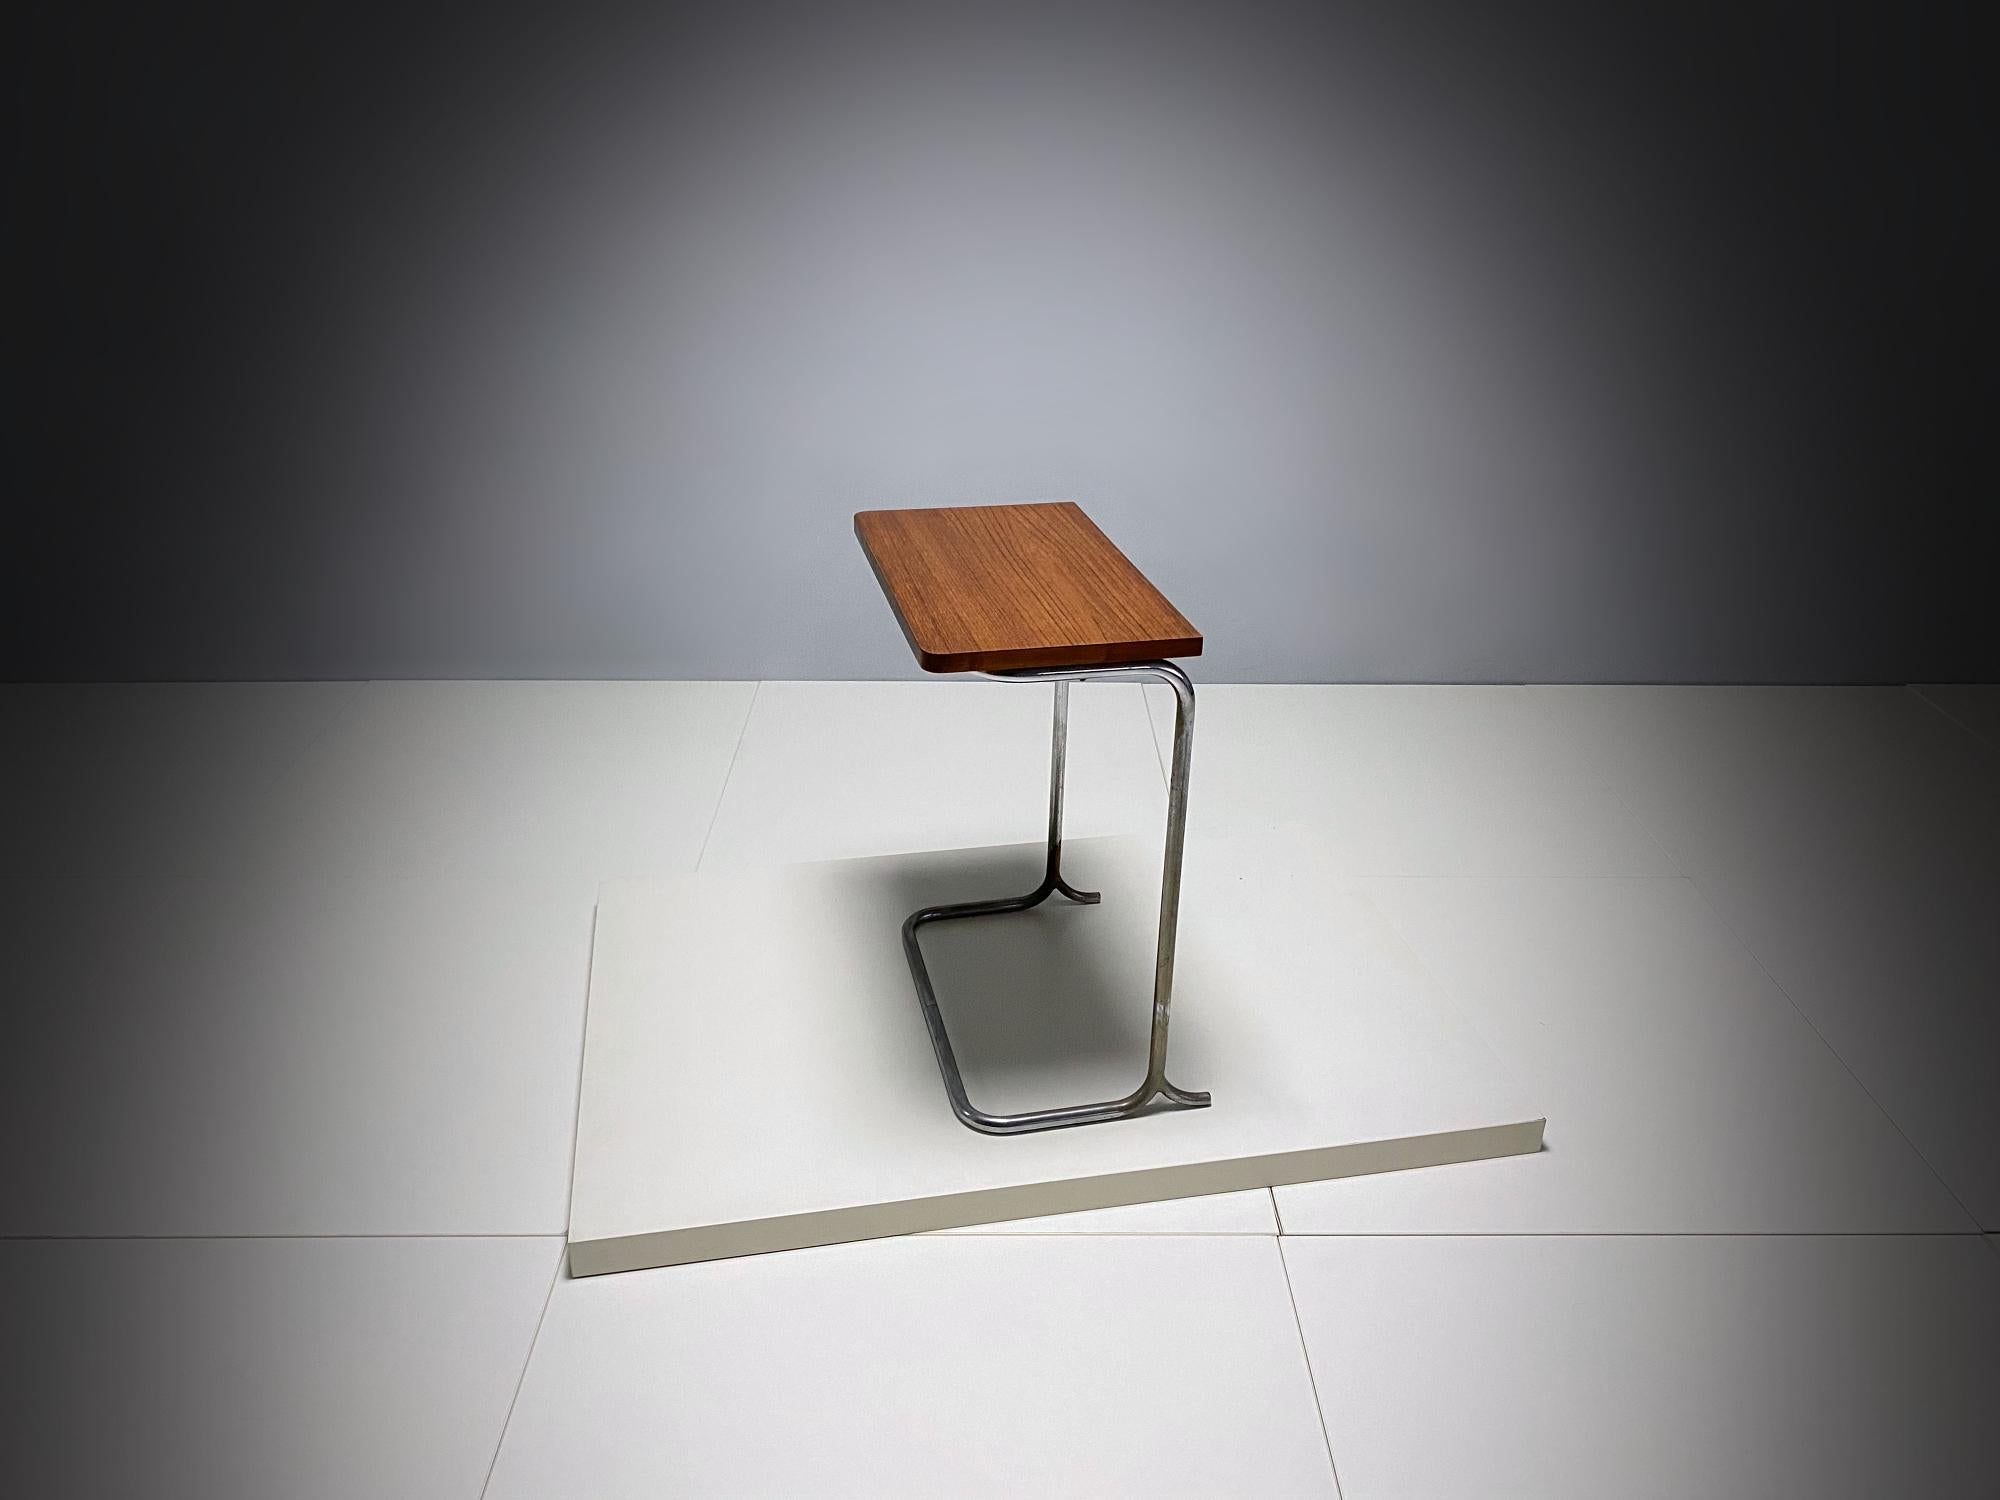 Belle console Bauhaus attribuée à Marcel Breuer, fabriquée à la main dans les années 1920, en Allemagne. La table est composée d'un tube en acier nickelé et d'un plateau en bois de noyer. La finition des pieds en forme de 